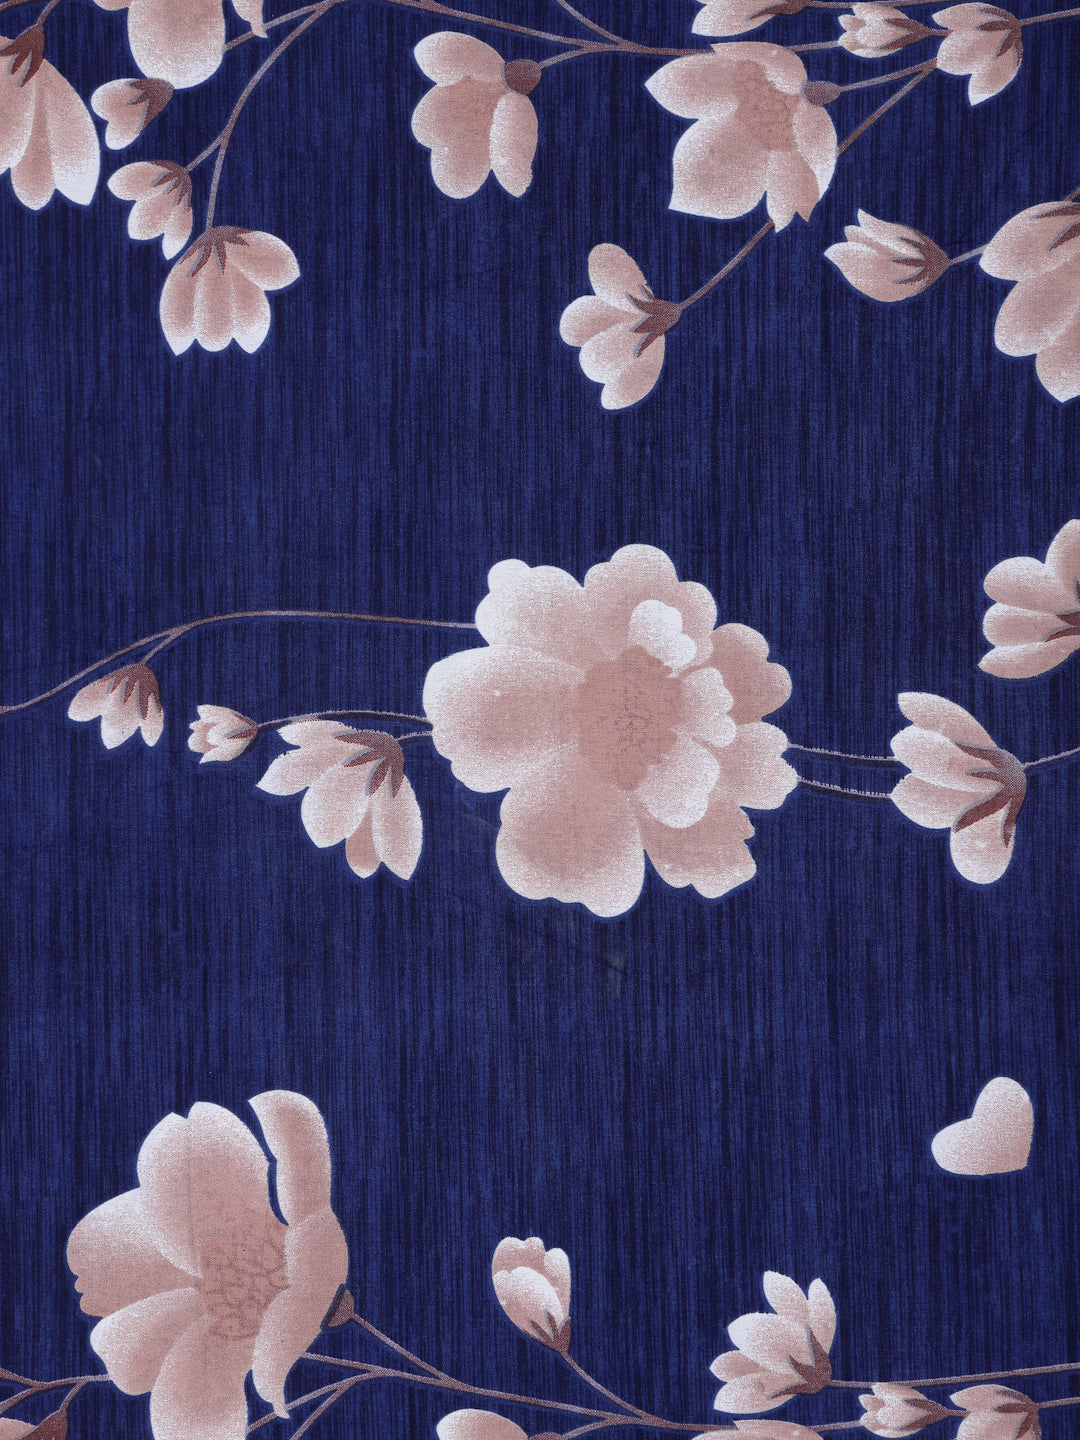 Arrabi Blue Floral TC Cotton Blend Single Size Bedsheet with 1 Pillow Cover (220 X 150 cm)